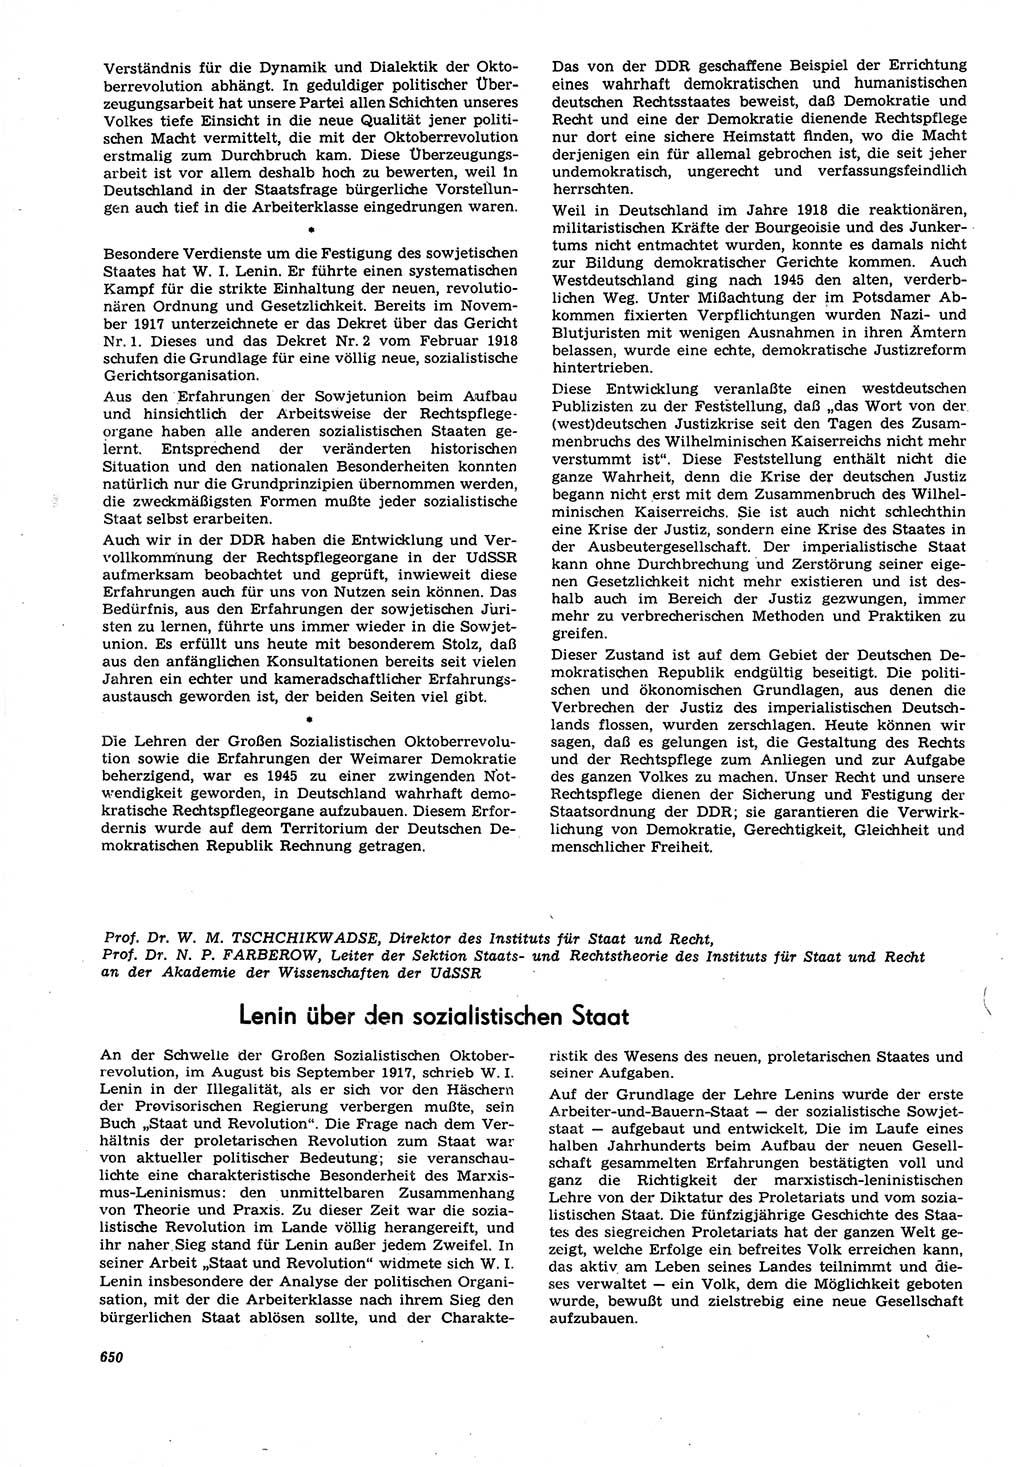 Neue Justiz (NJ), Zeitschrift für Recht und Rechtswissenschaft [Deutsche Demokratische Republik (DDR)], 21. Jahrgang 1967, Seite 650 (NJ DDR 1967, S. 650)